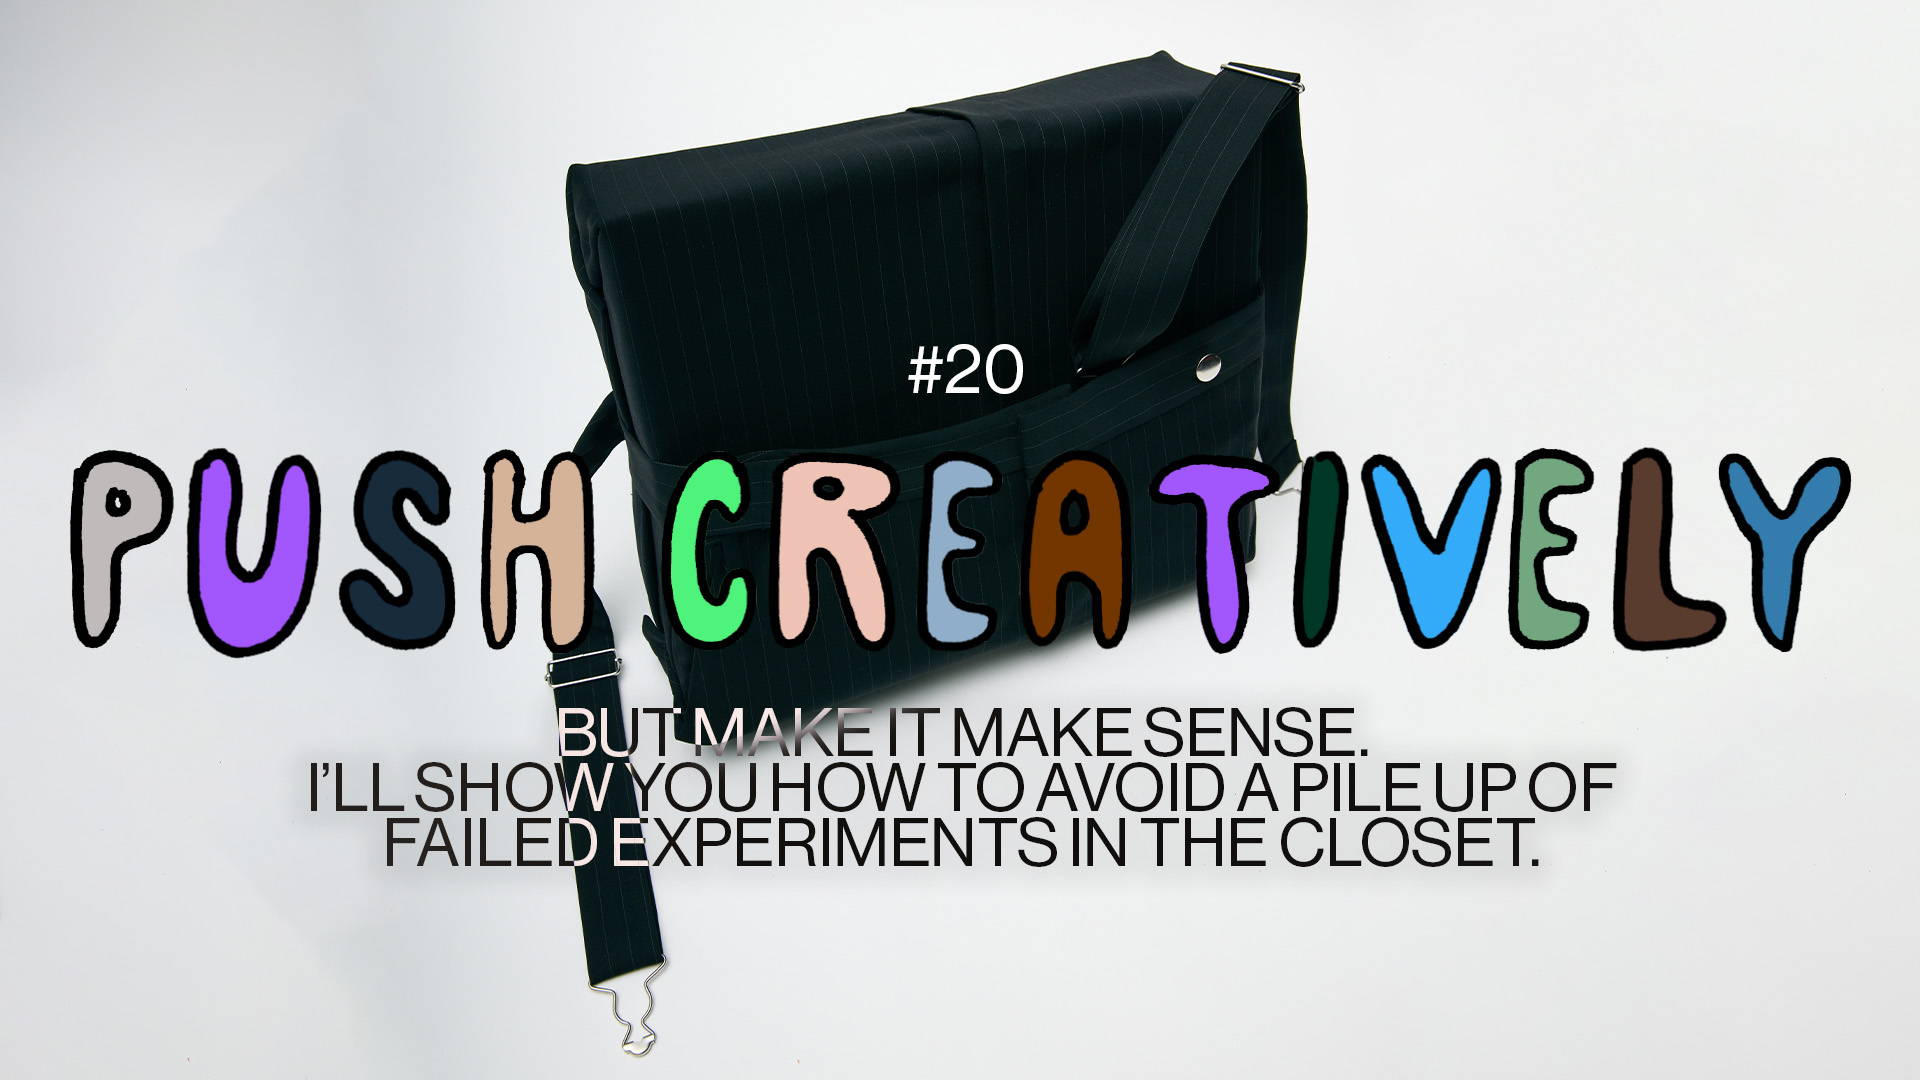 Push Creatively, Good Ick #20